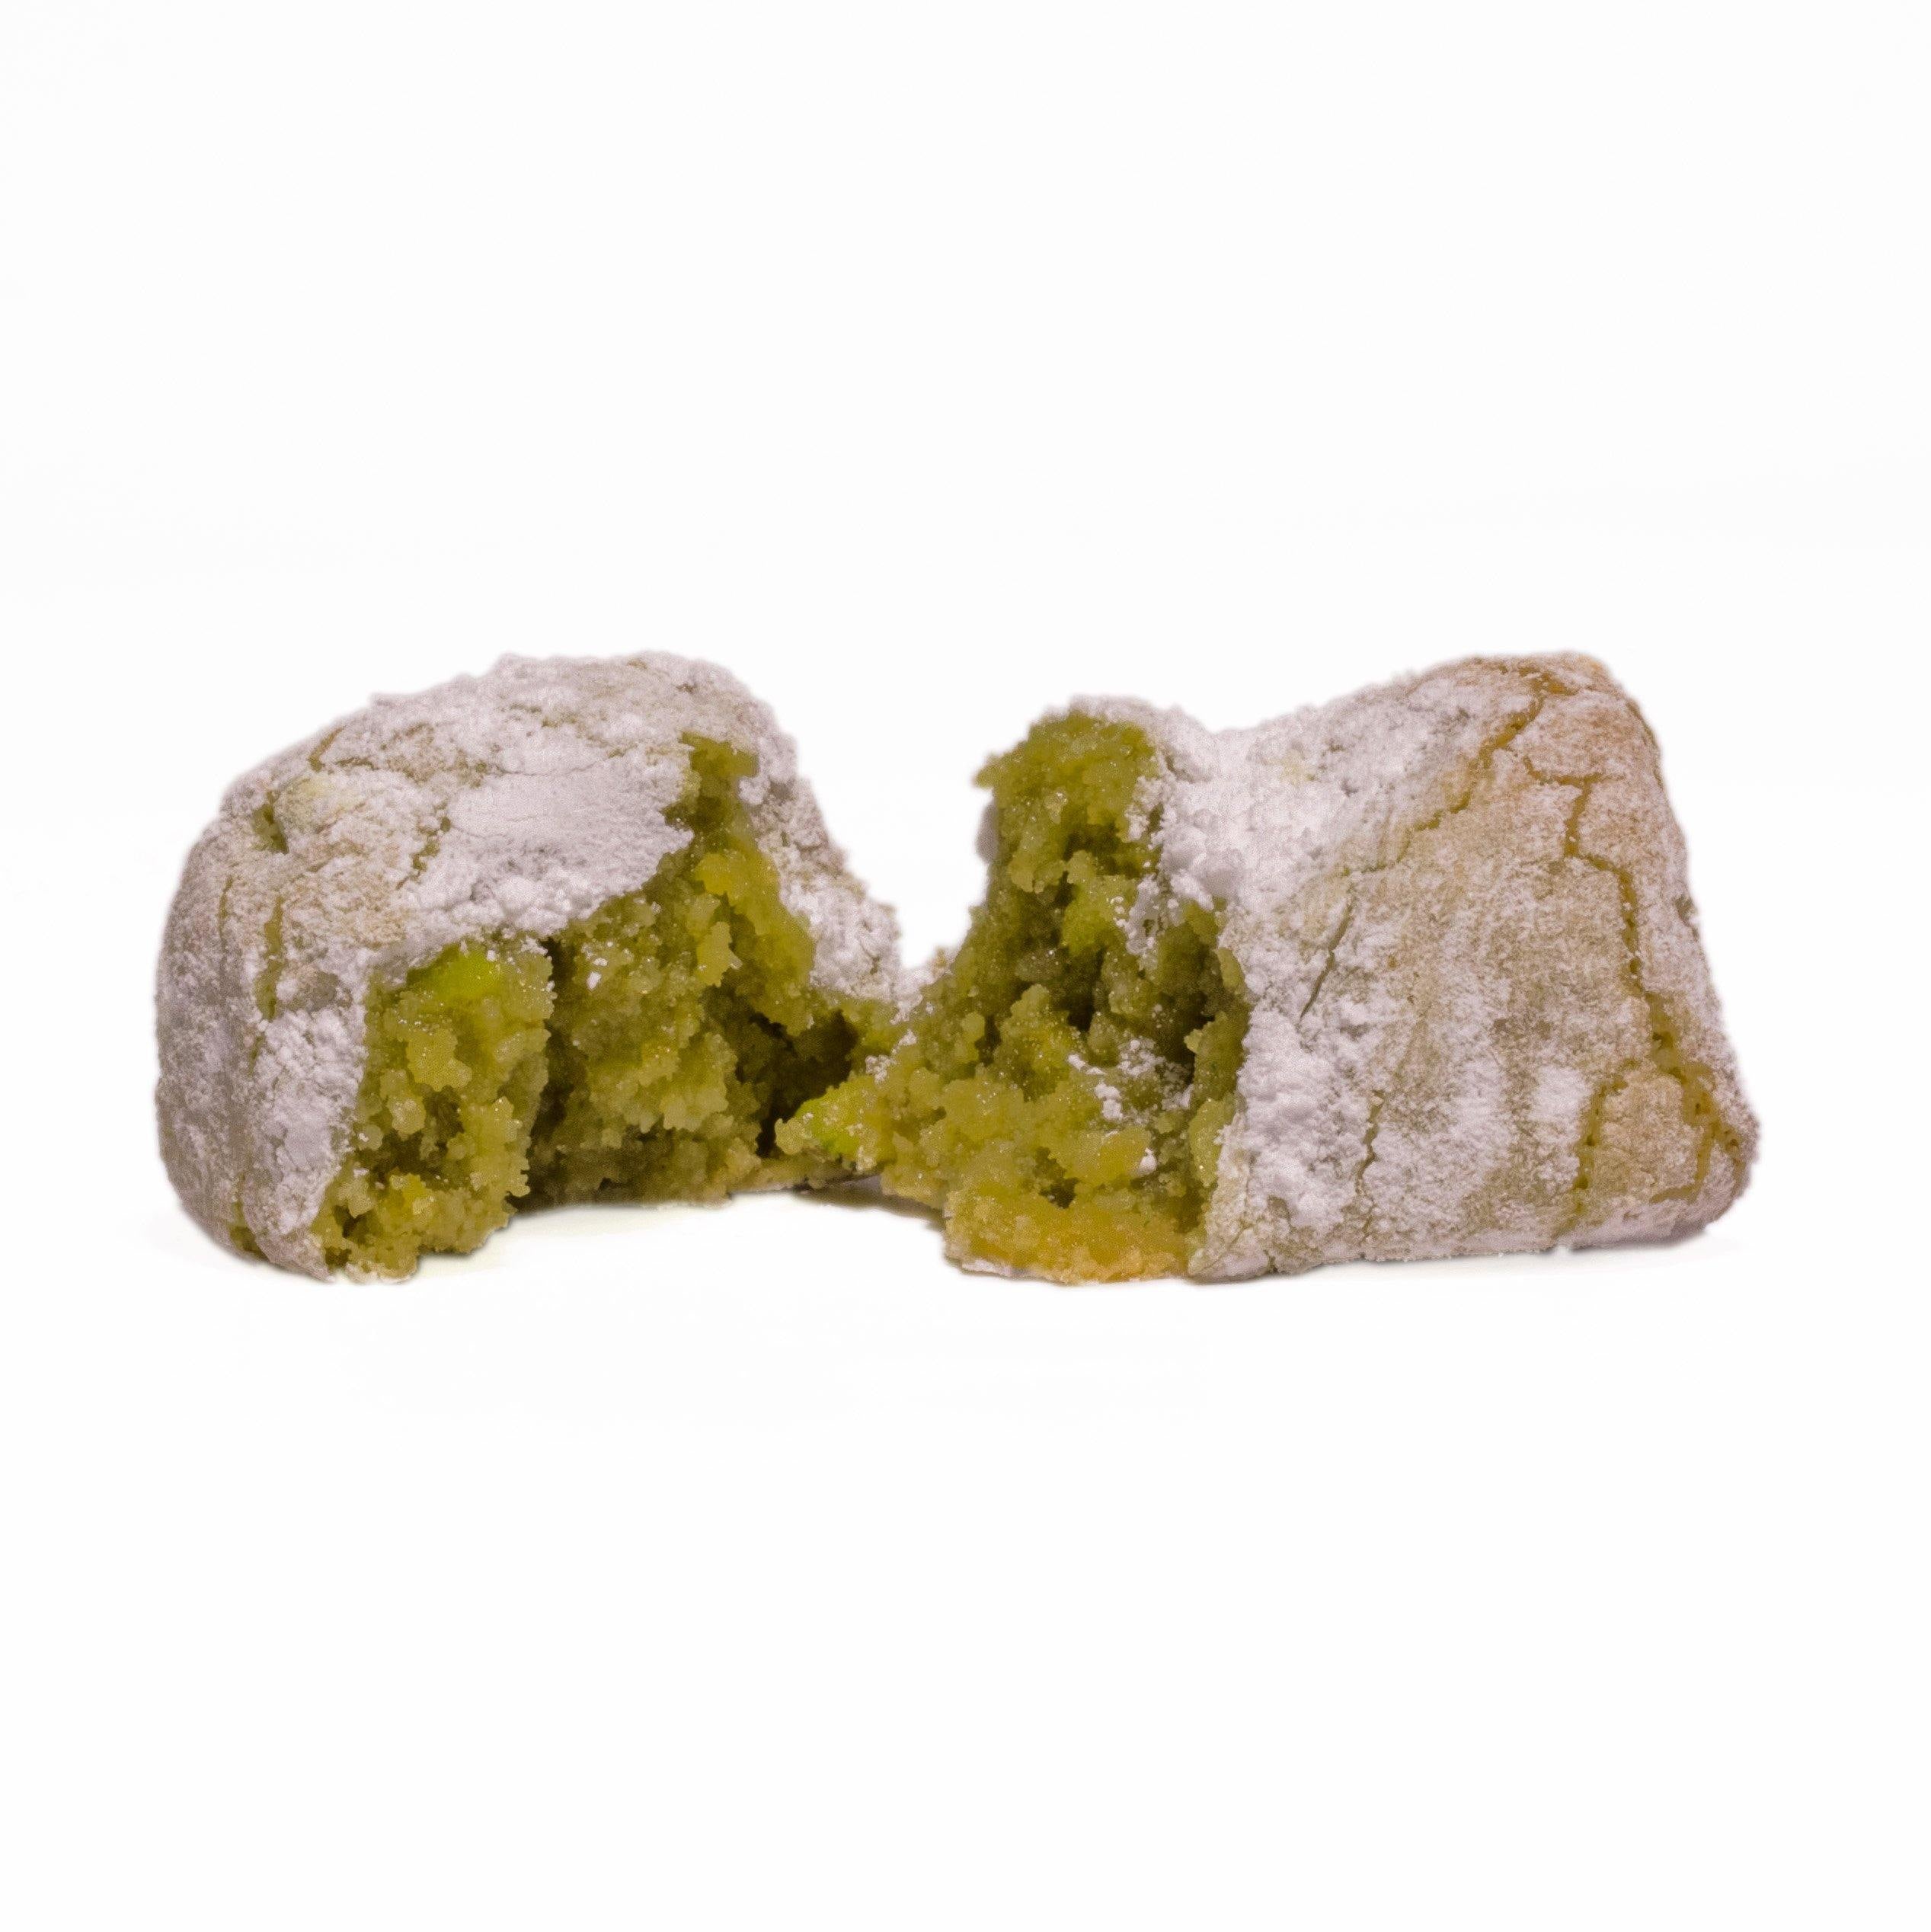 Fior di pistacchio Sicilia - Pasticceria Tornesi Grasso